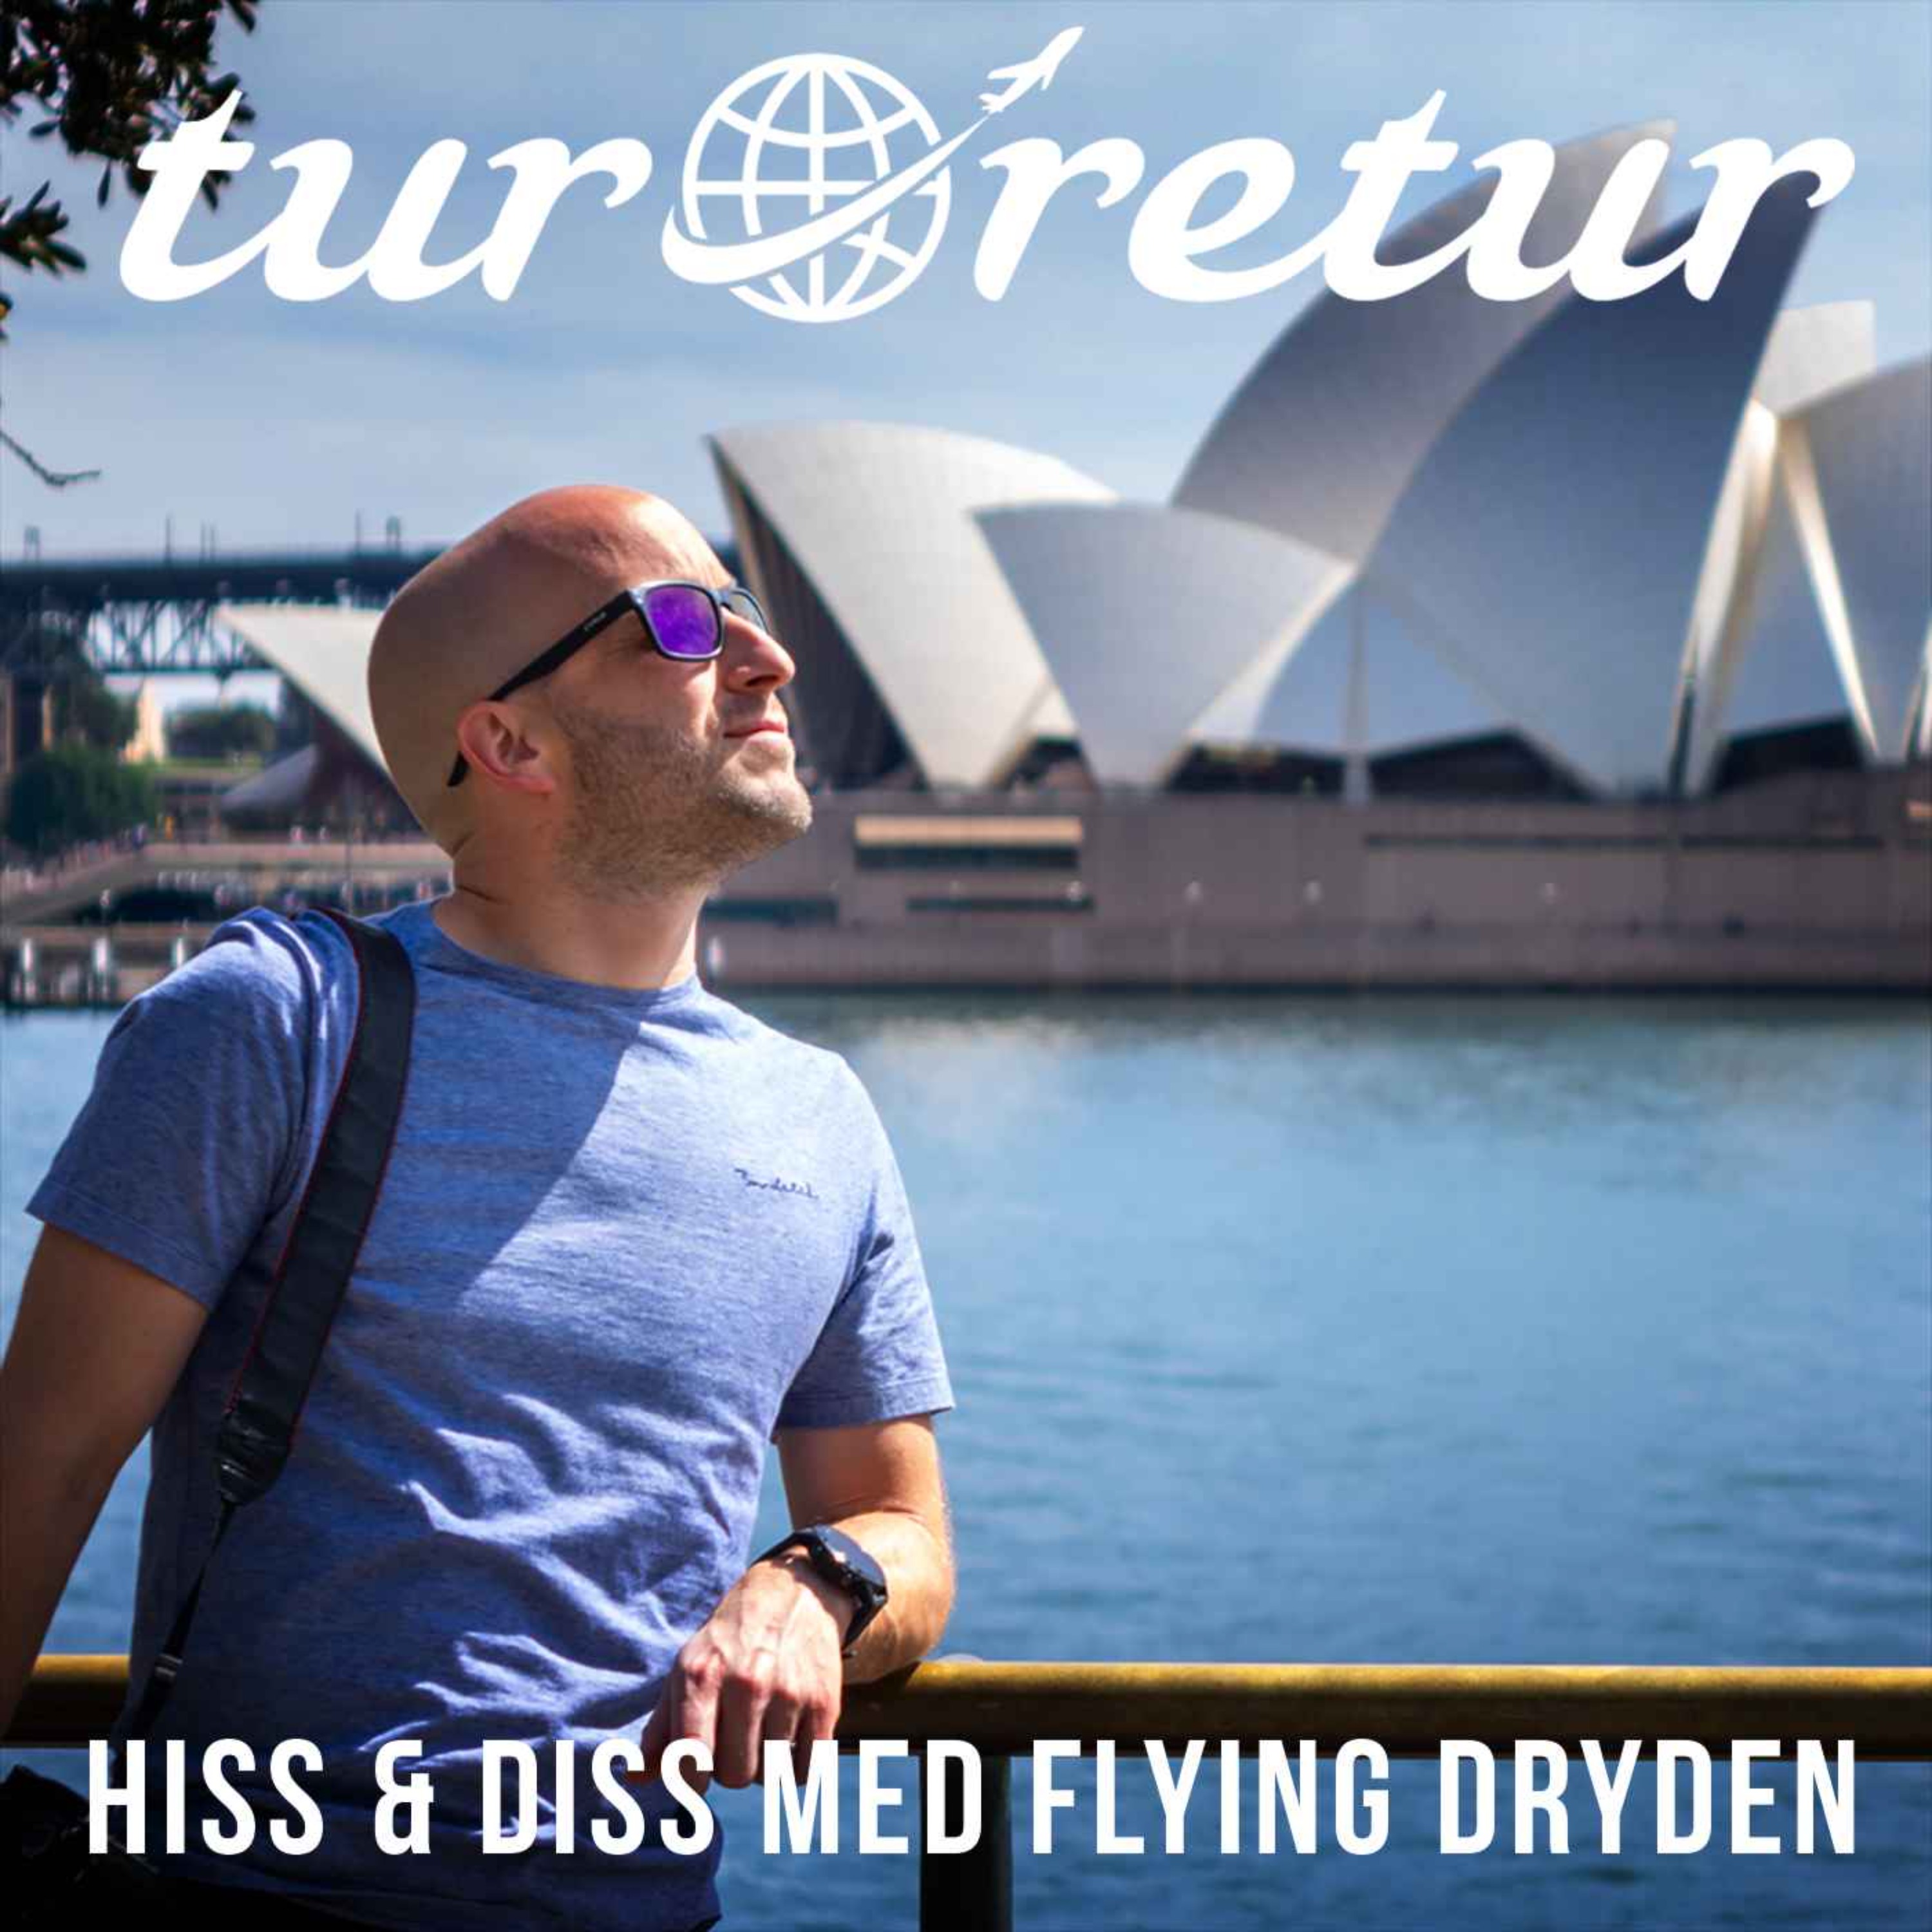 Hiss & diss med Flying Dryden